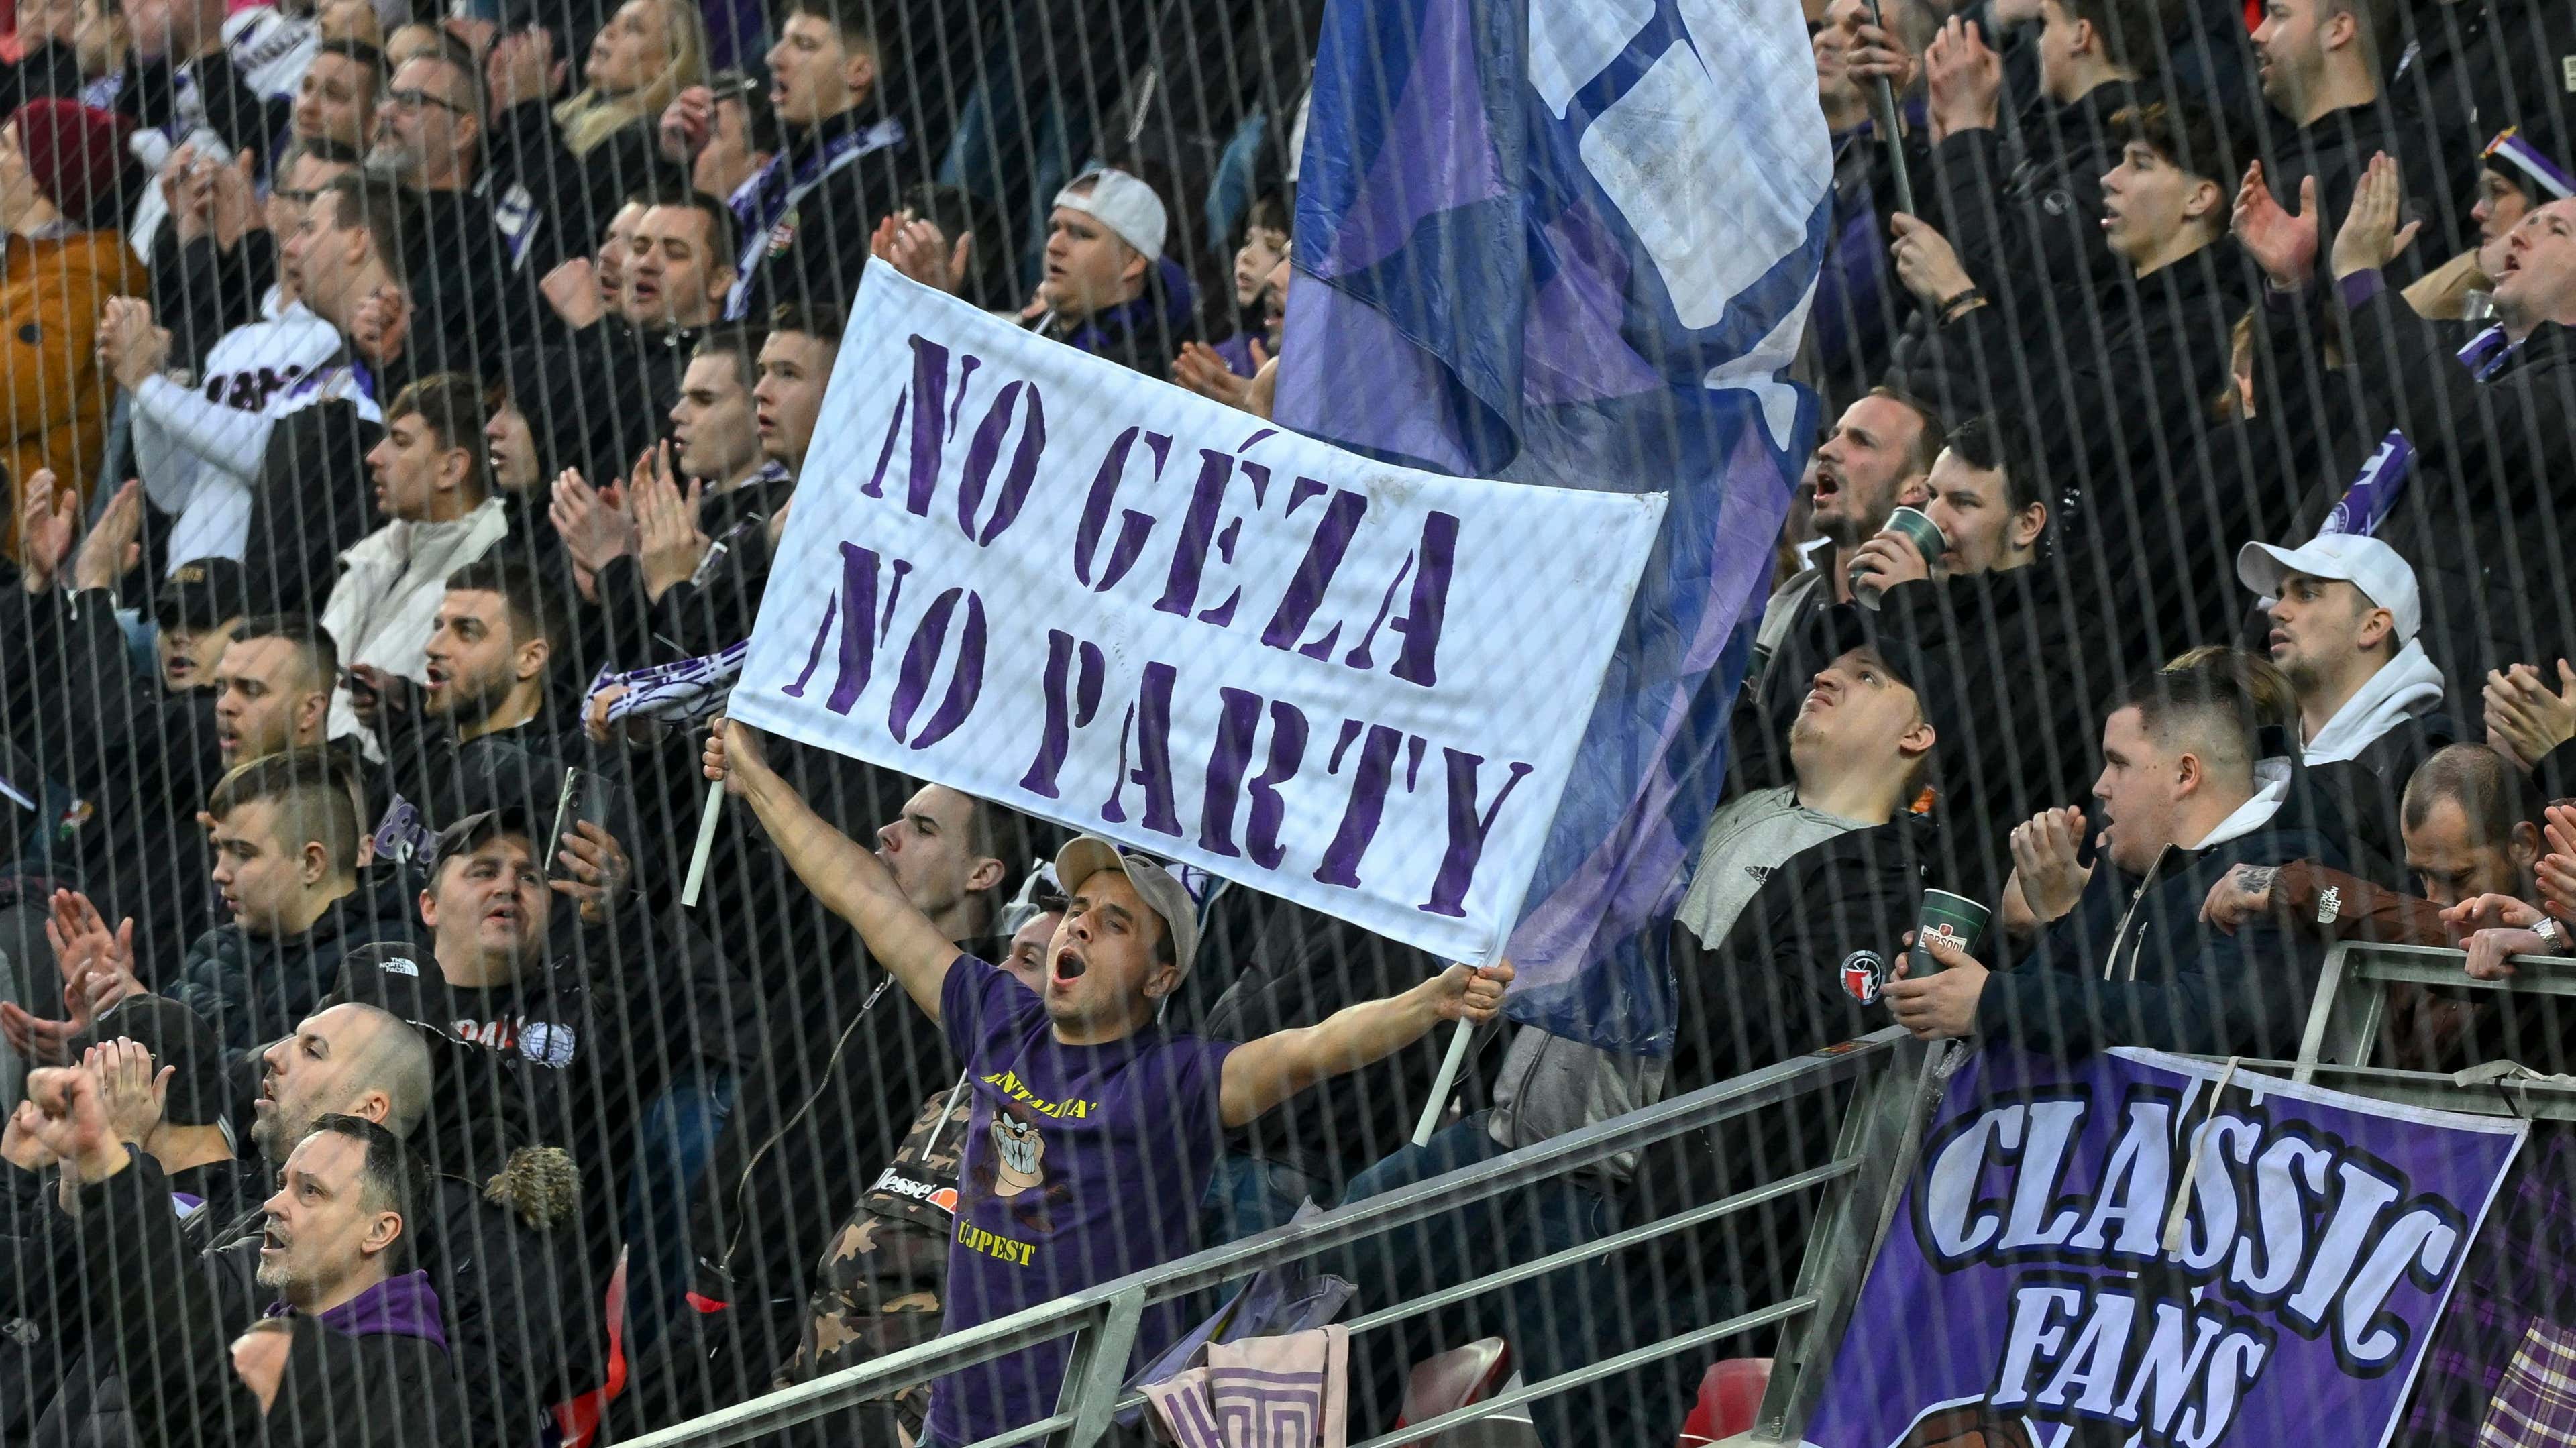 No Géza, No Party